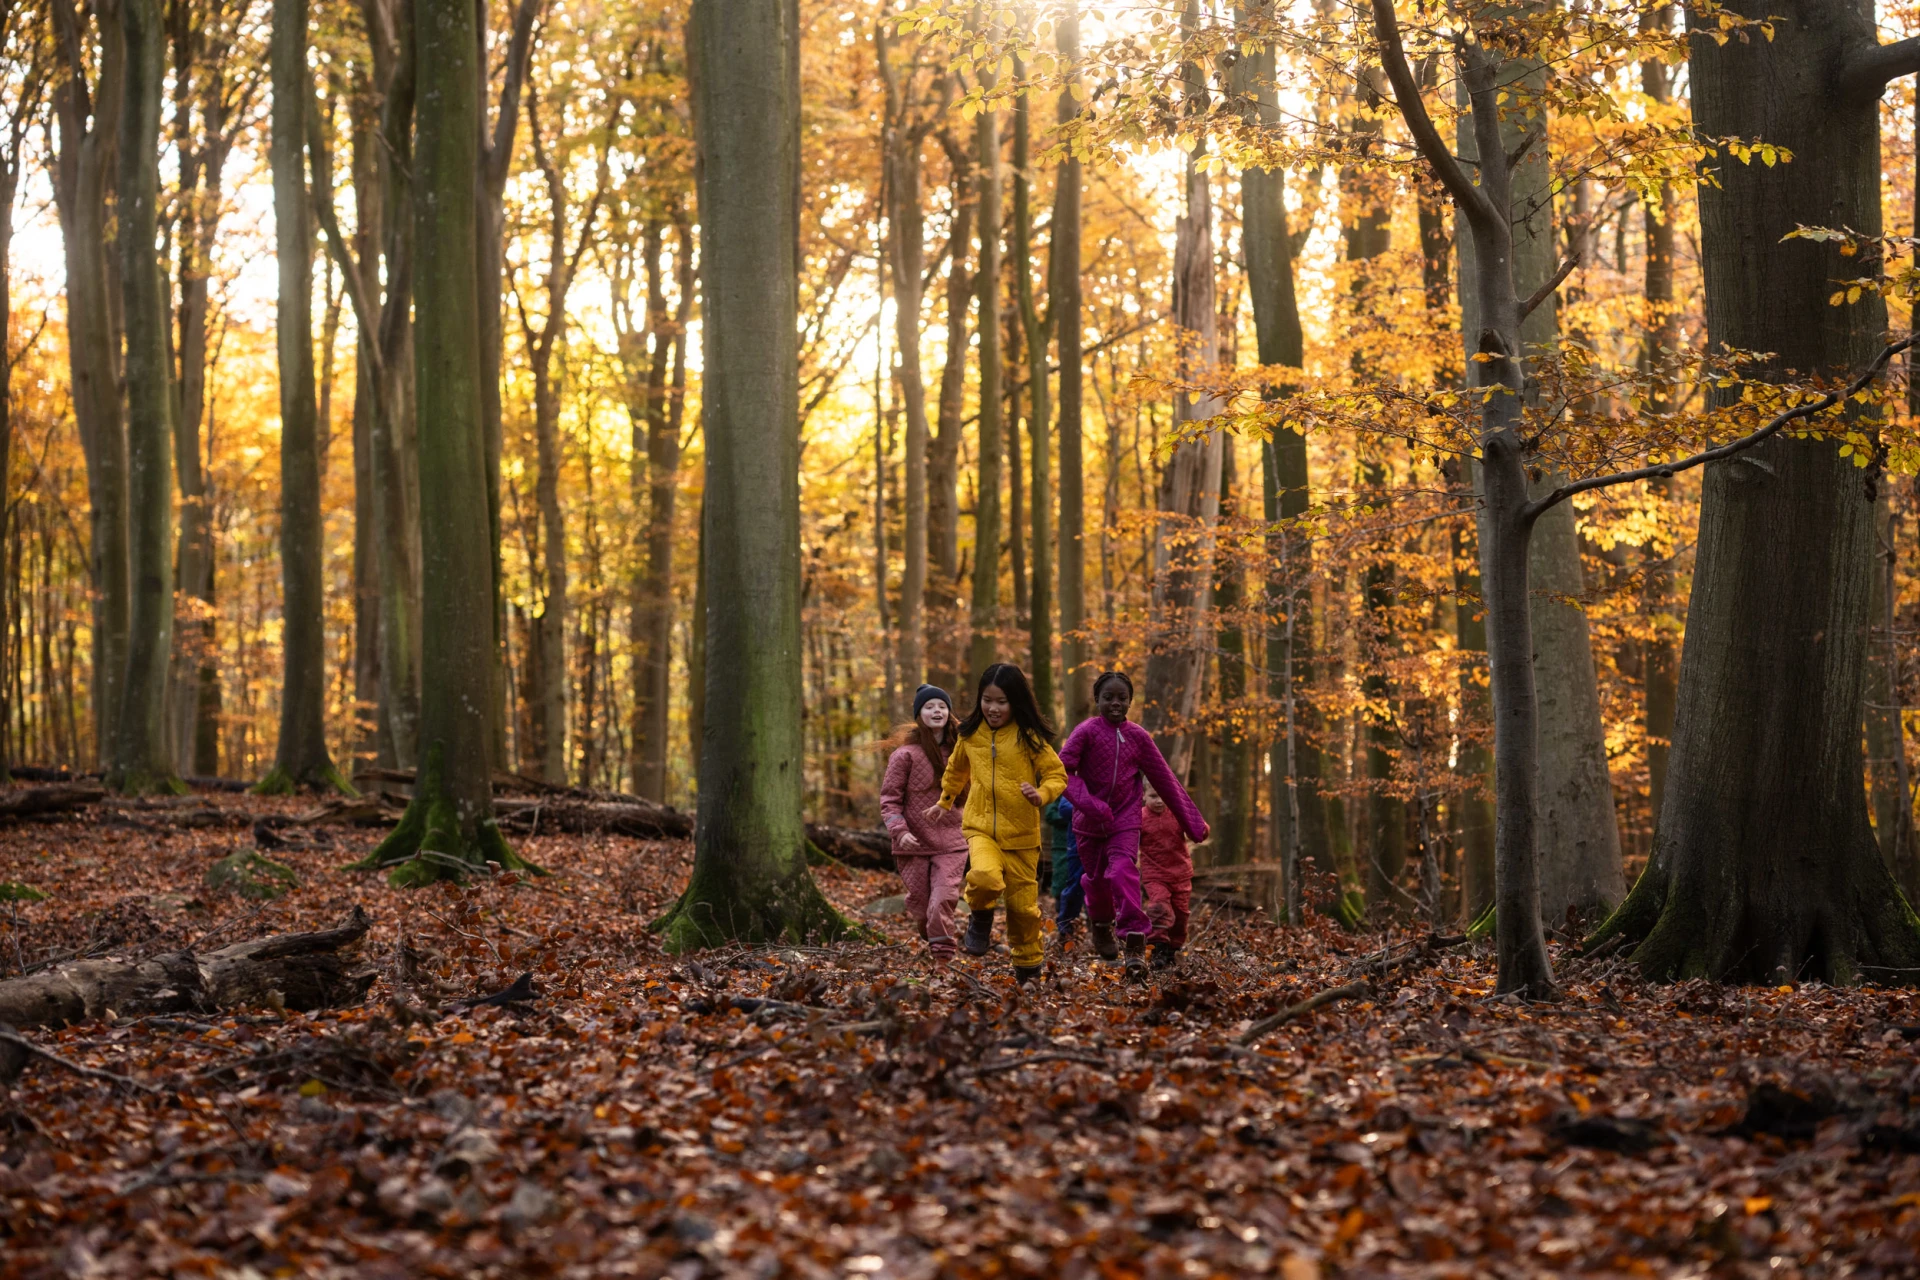 børn løber gennem en skov om efteråret